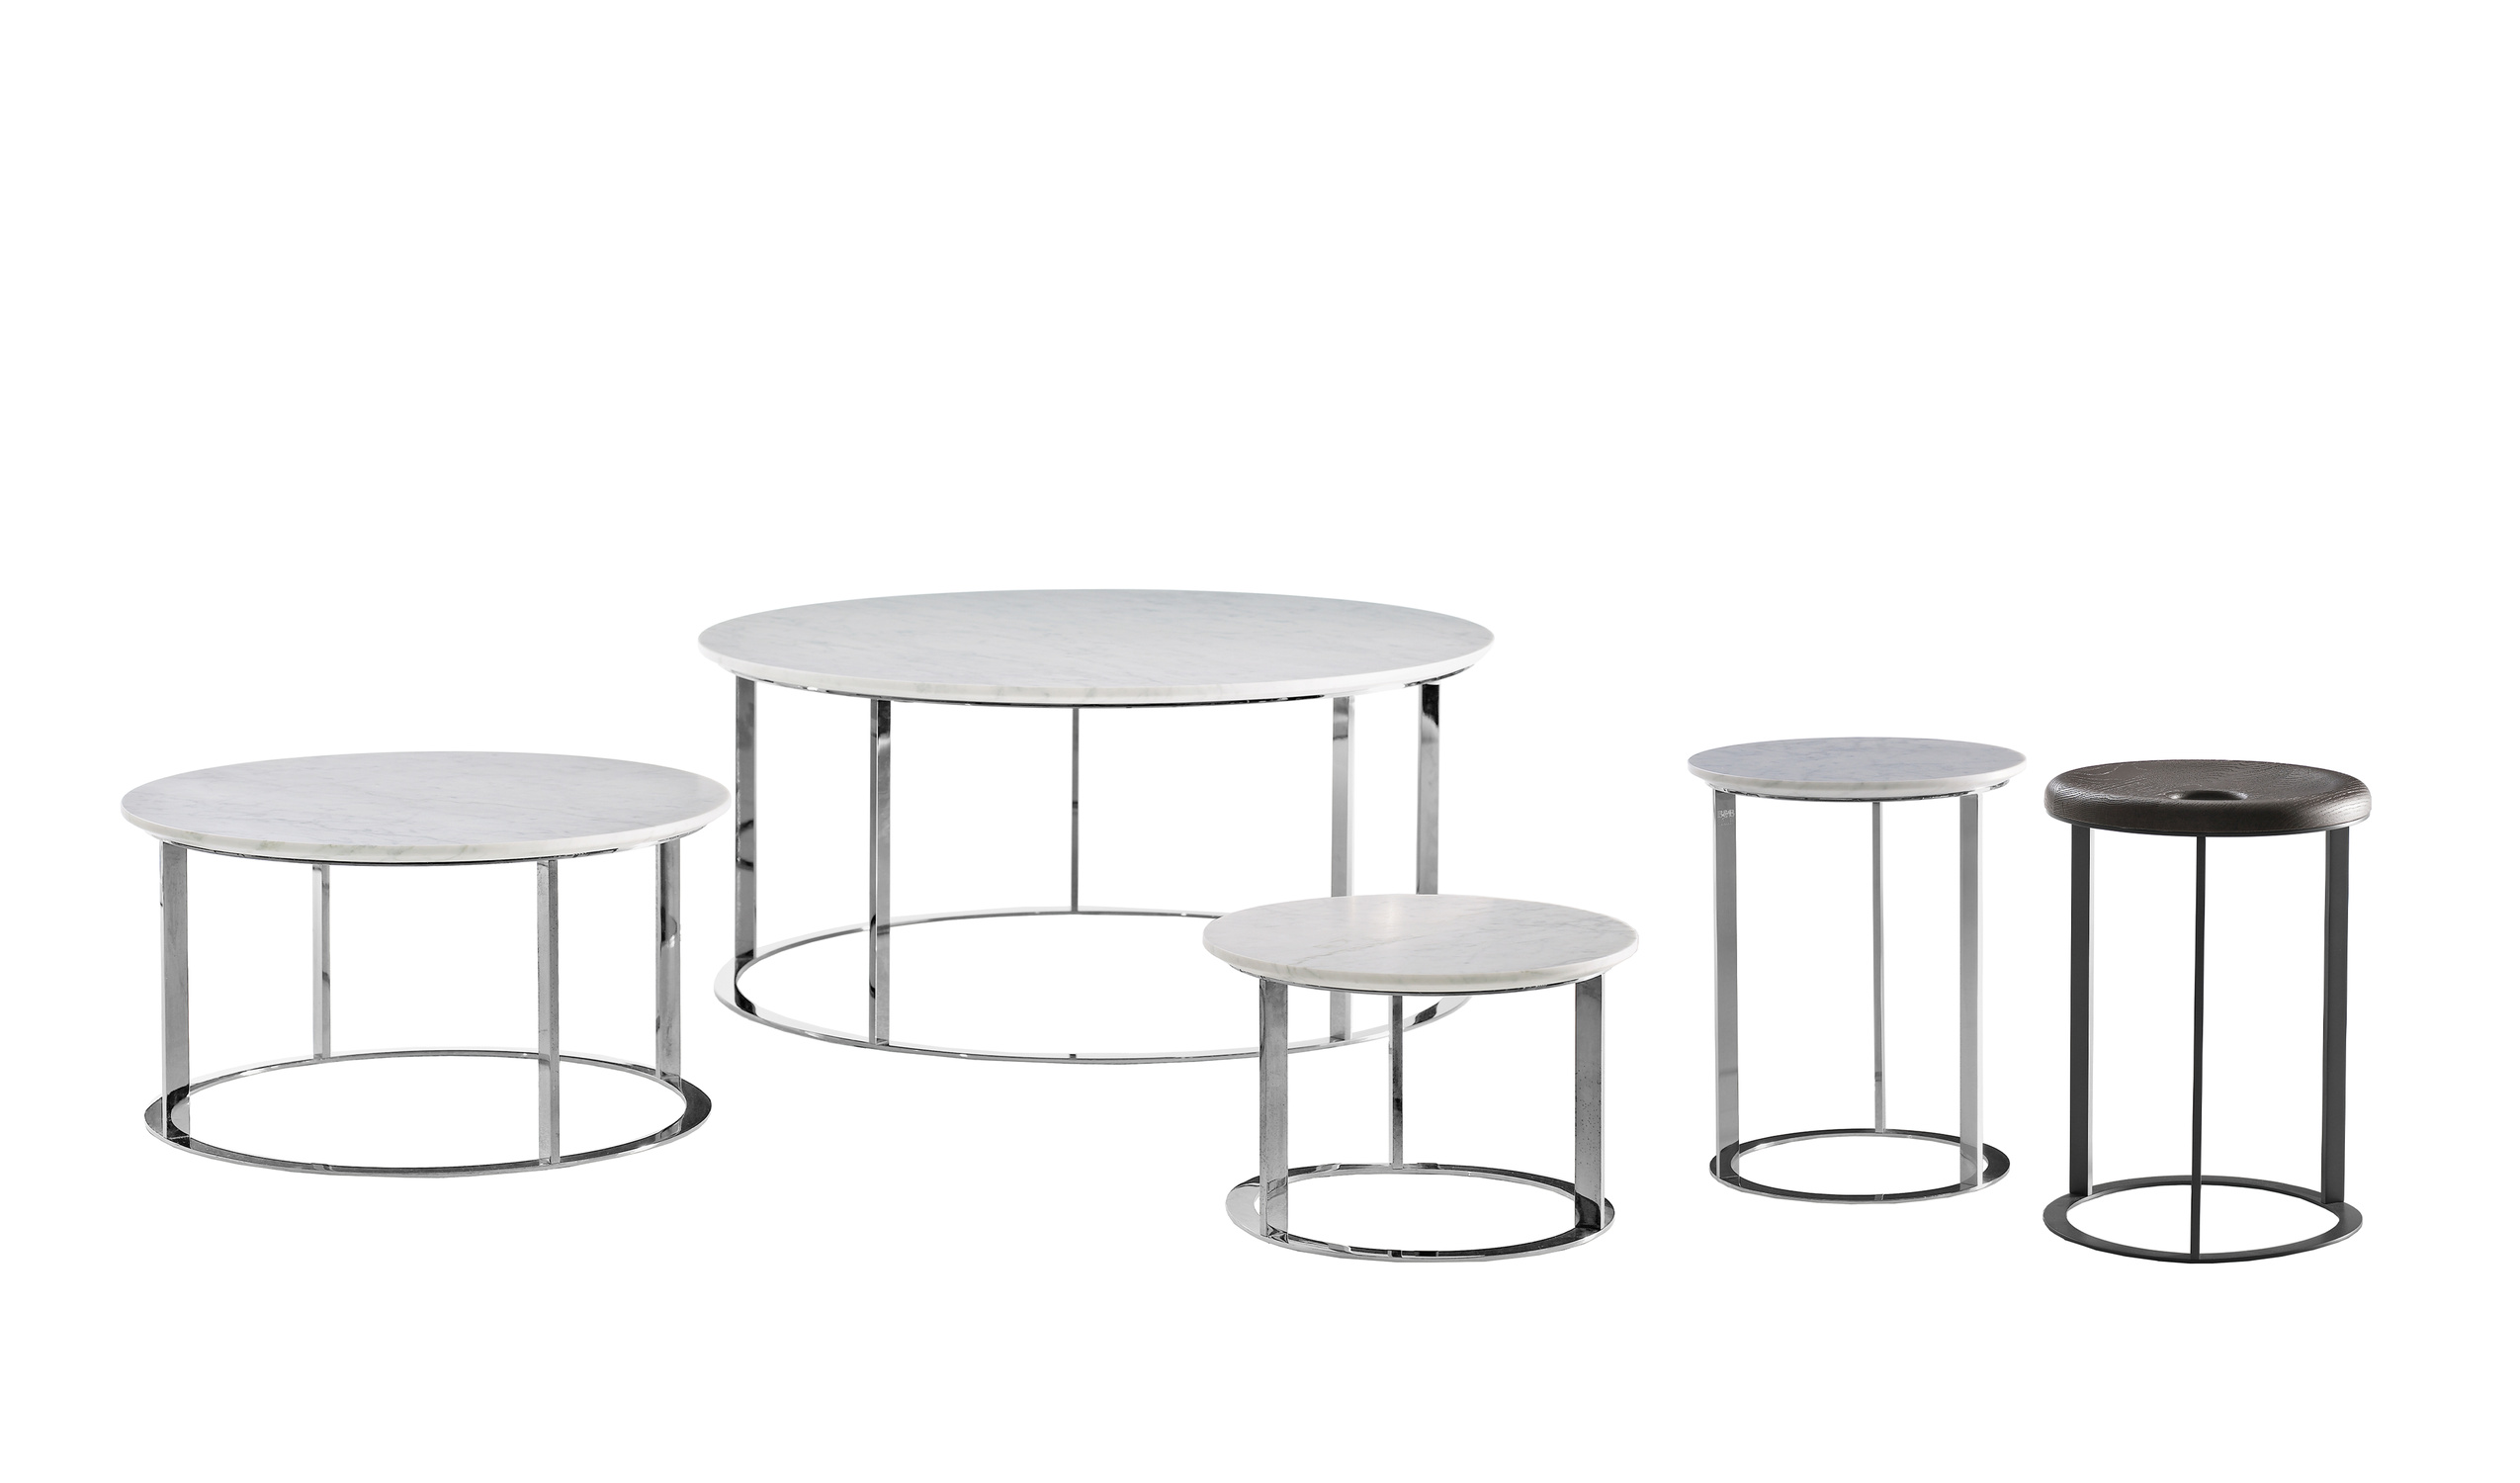 Designer italian modern small tables  - Mera Small tables